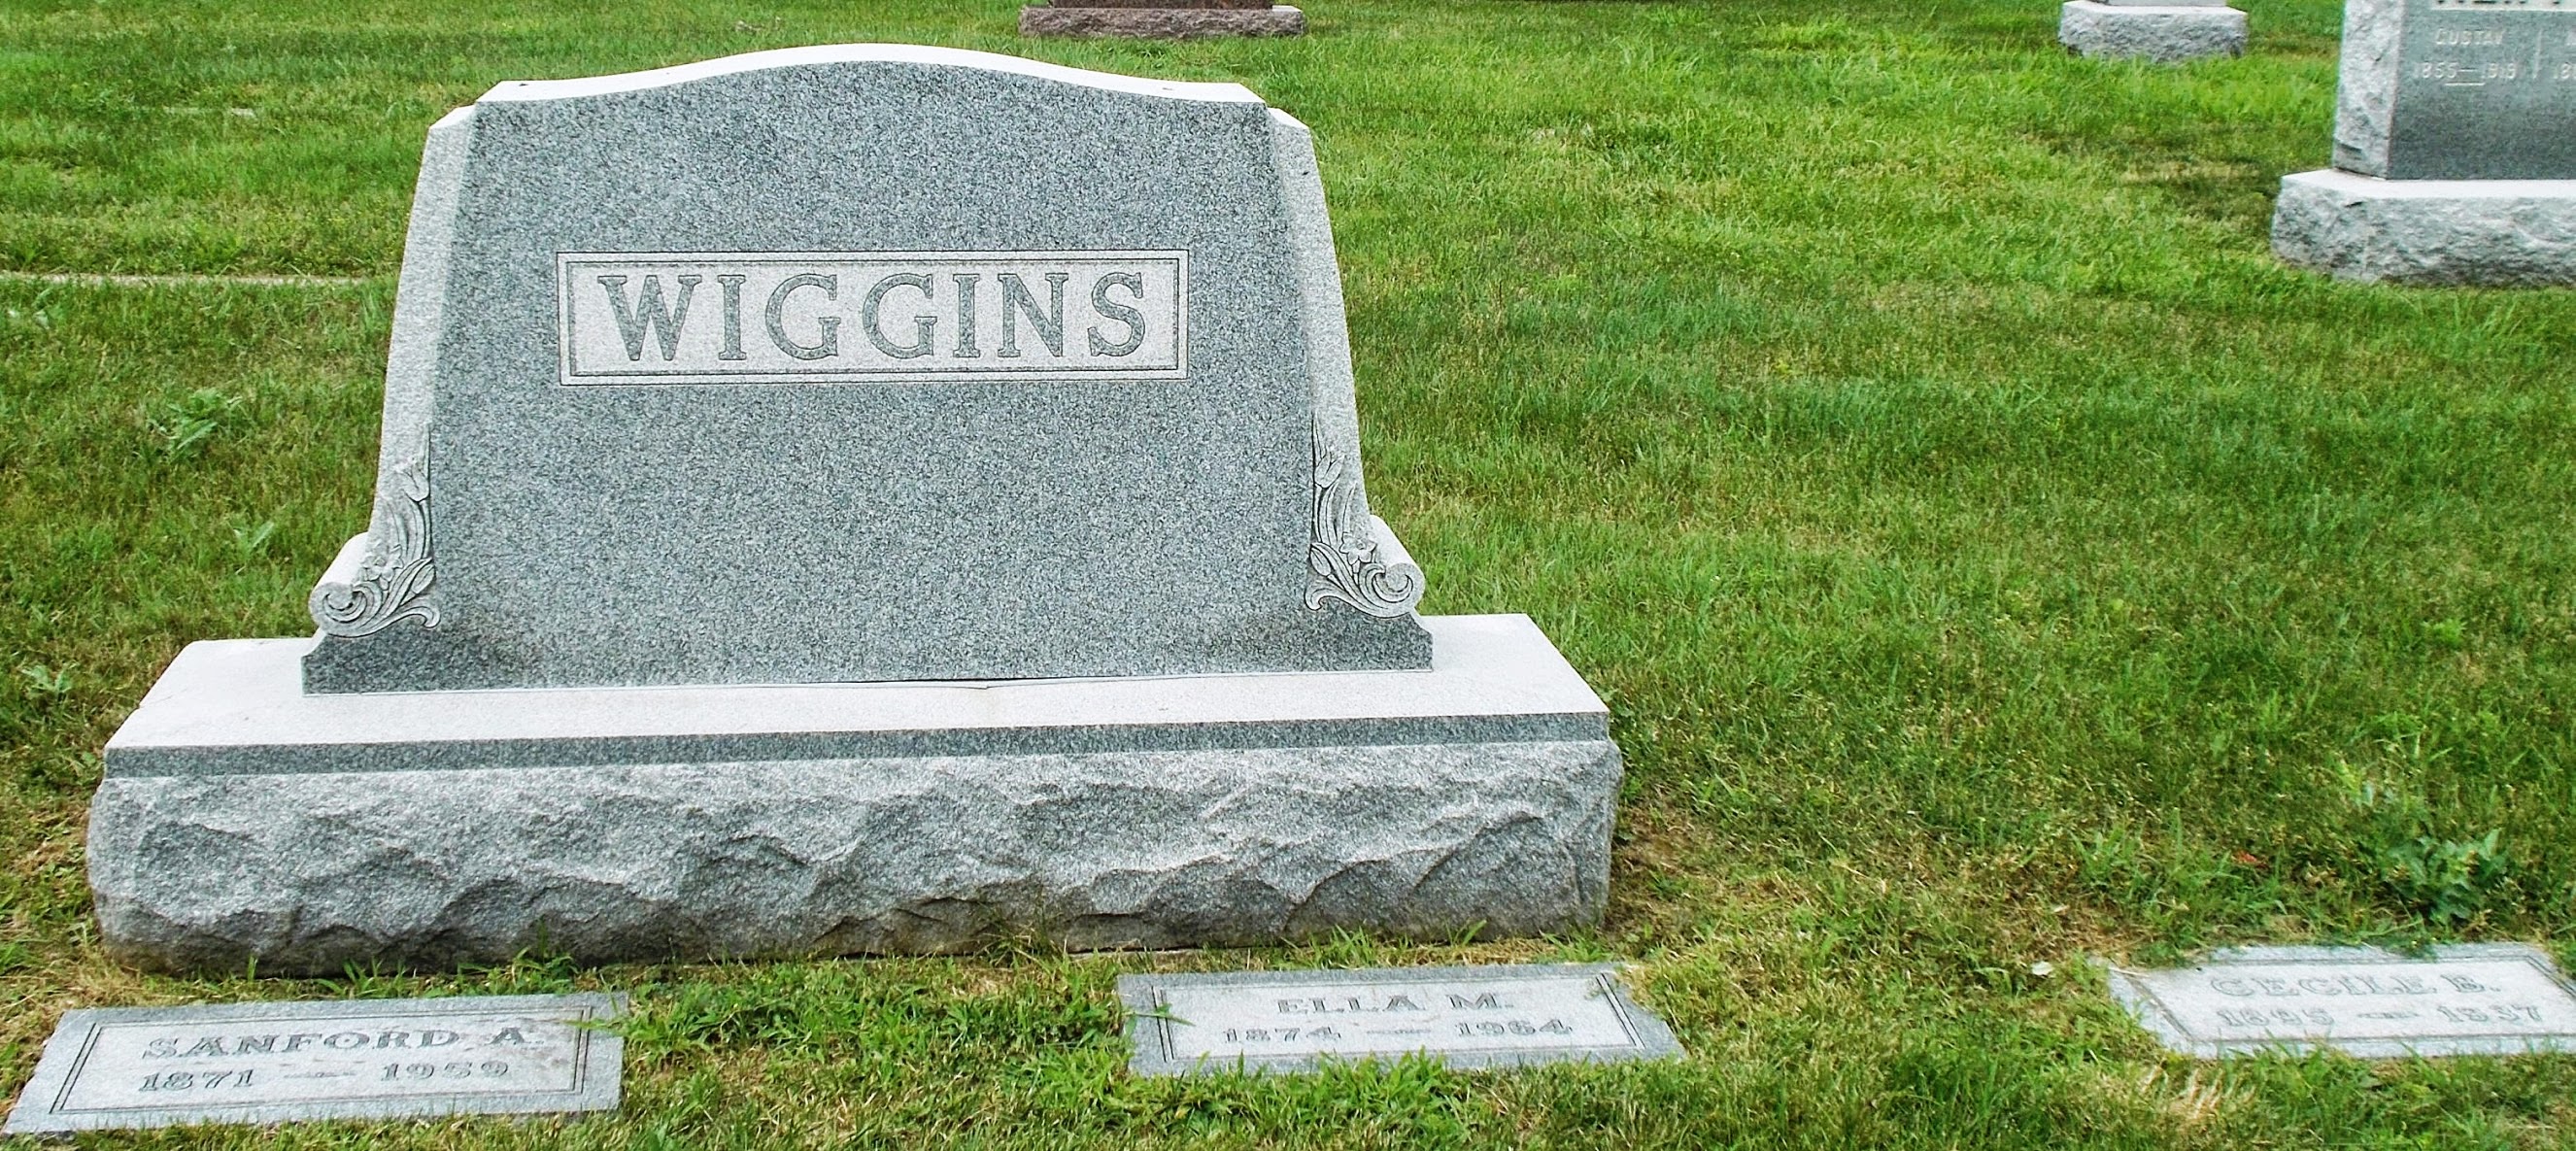 Ralph W Wiggins